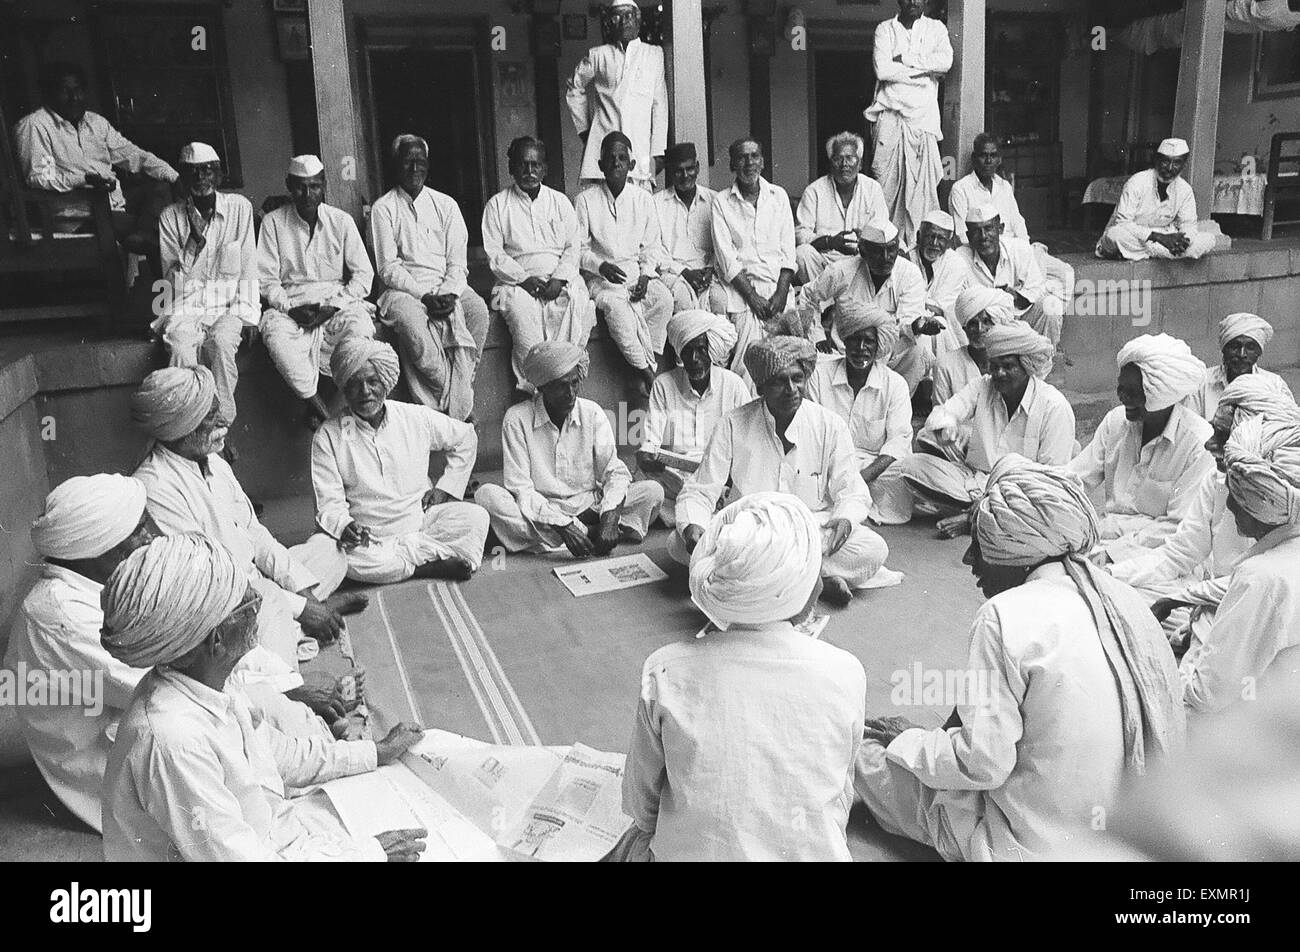 Les villageois de Munagoli vêtus de turbans blancs traditionnels ou de casquettes blanches se réunissent dans la cour de la vieille maison du propriétaire Munjaili, Morena, Madhya Pradesh, Inde, Asie Banque D'Images